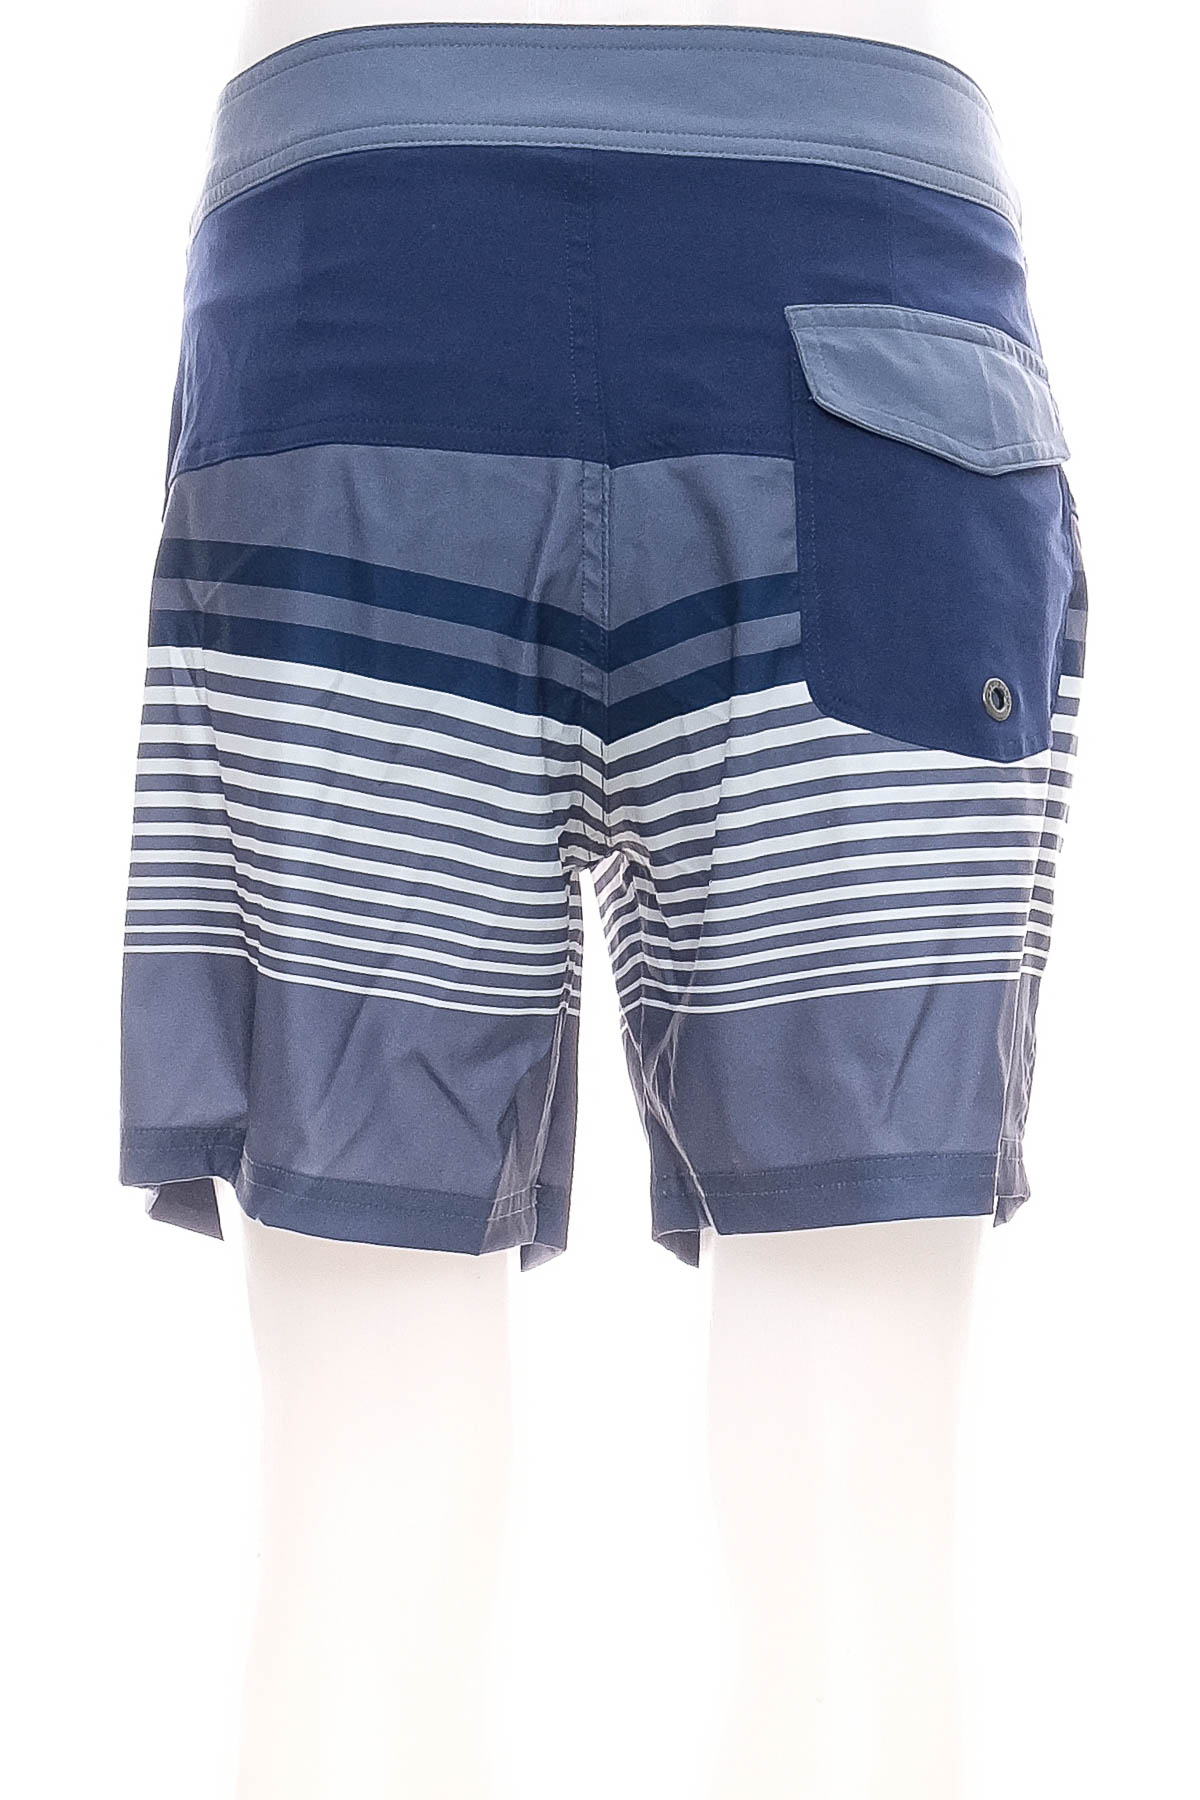 Men's shorts - Tribord - 1